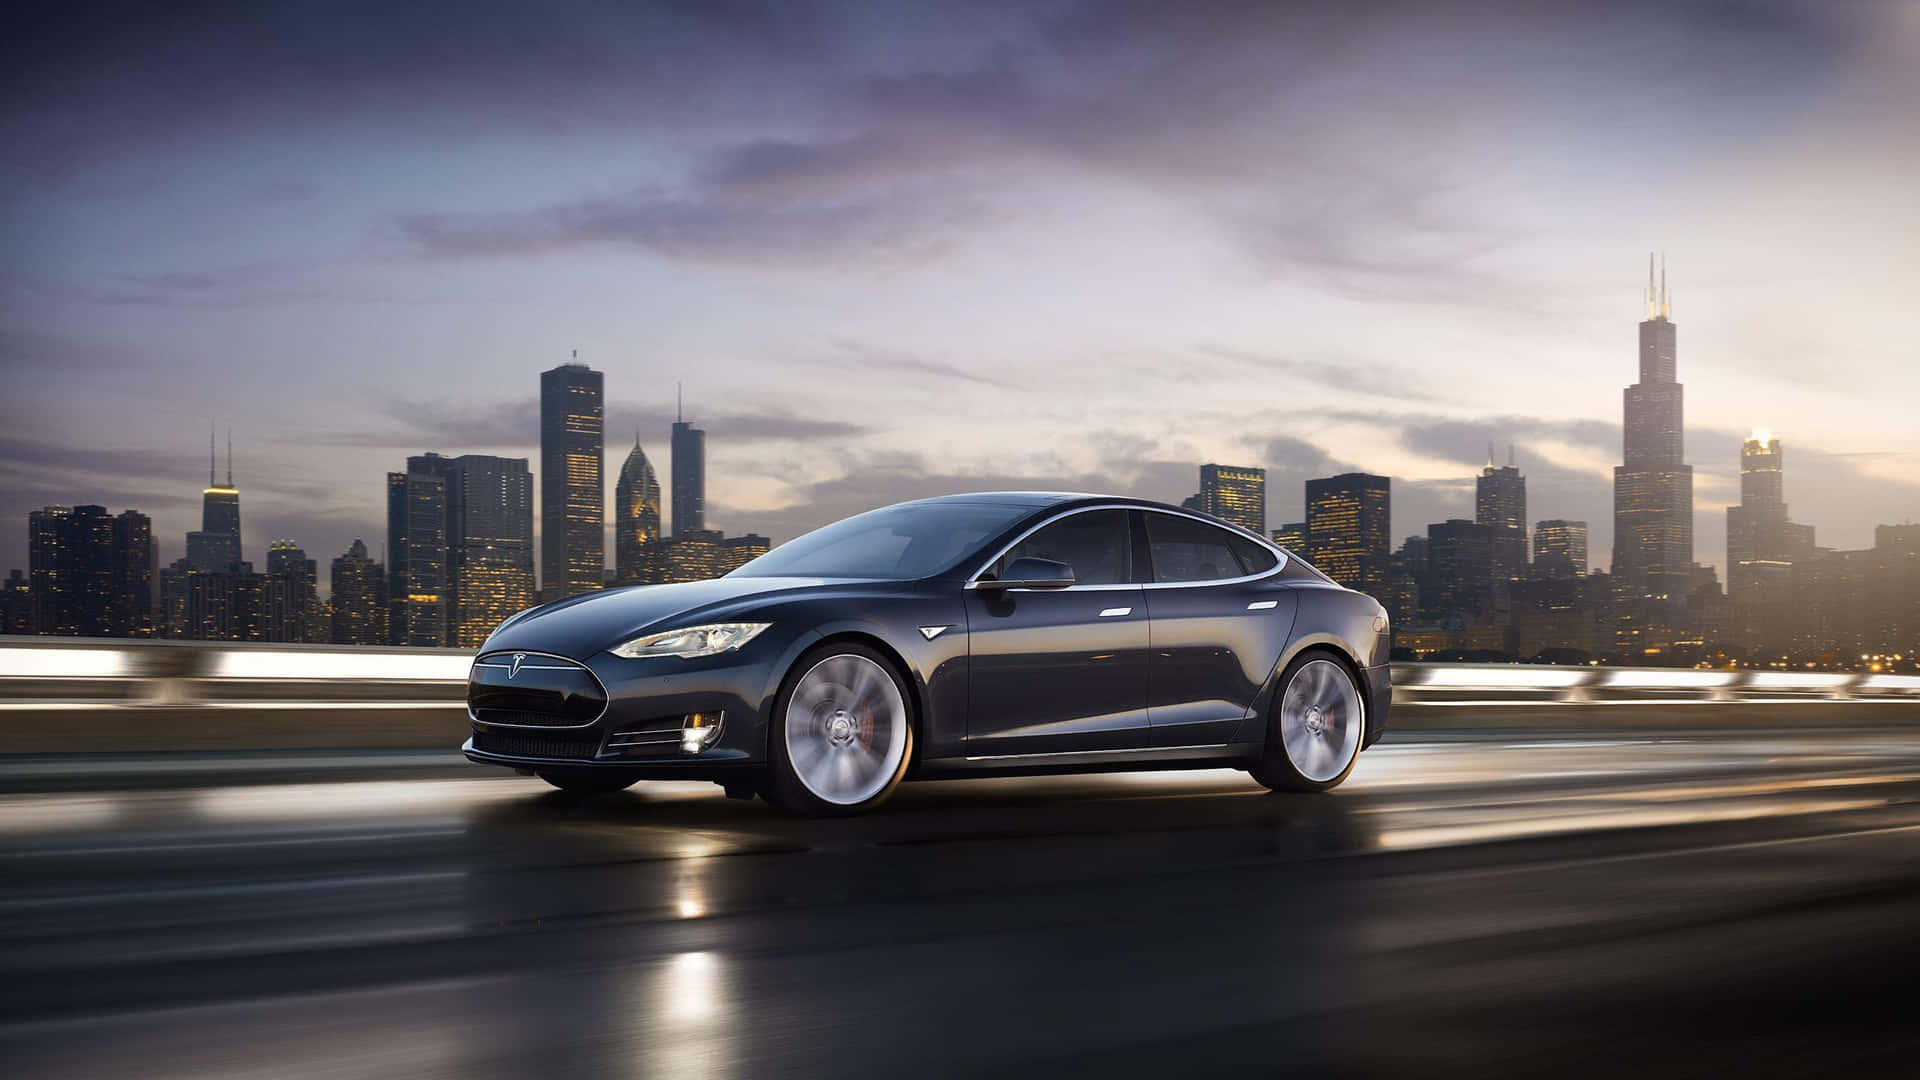 Sleek Tesla Model 3 Luxury Electric Vehicle